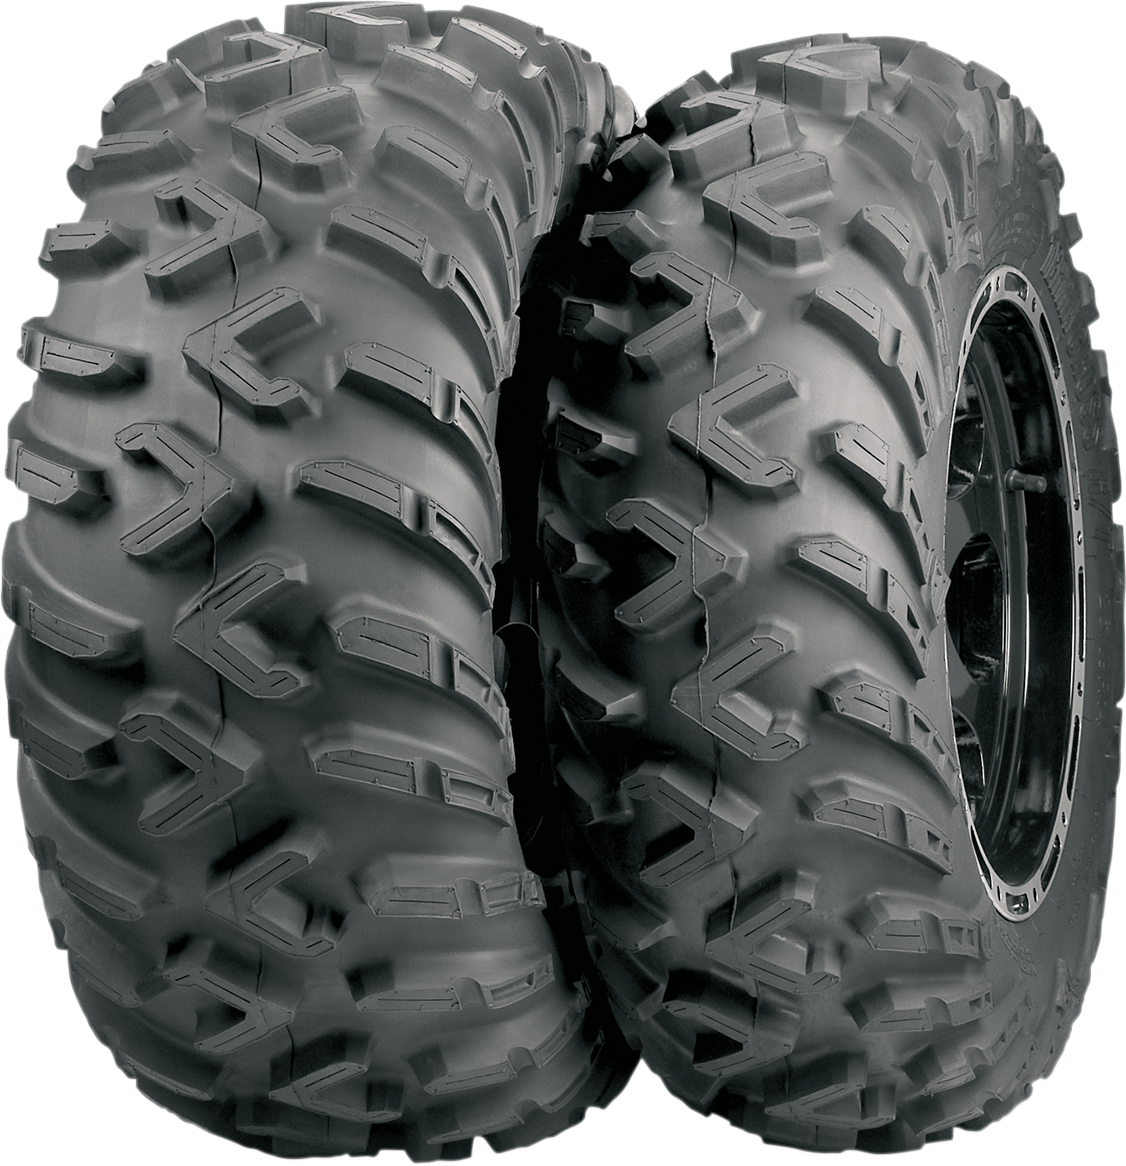 ITP Tire - Terracross R/T - Rear - 26x10R14 - 6 Ply 6EE483